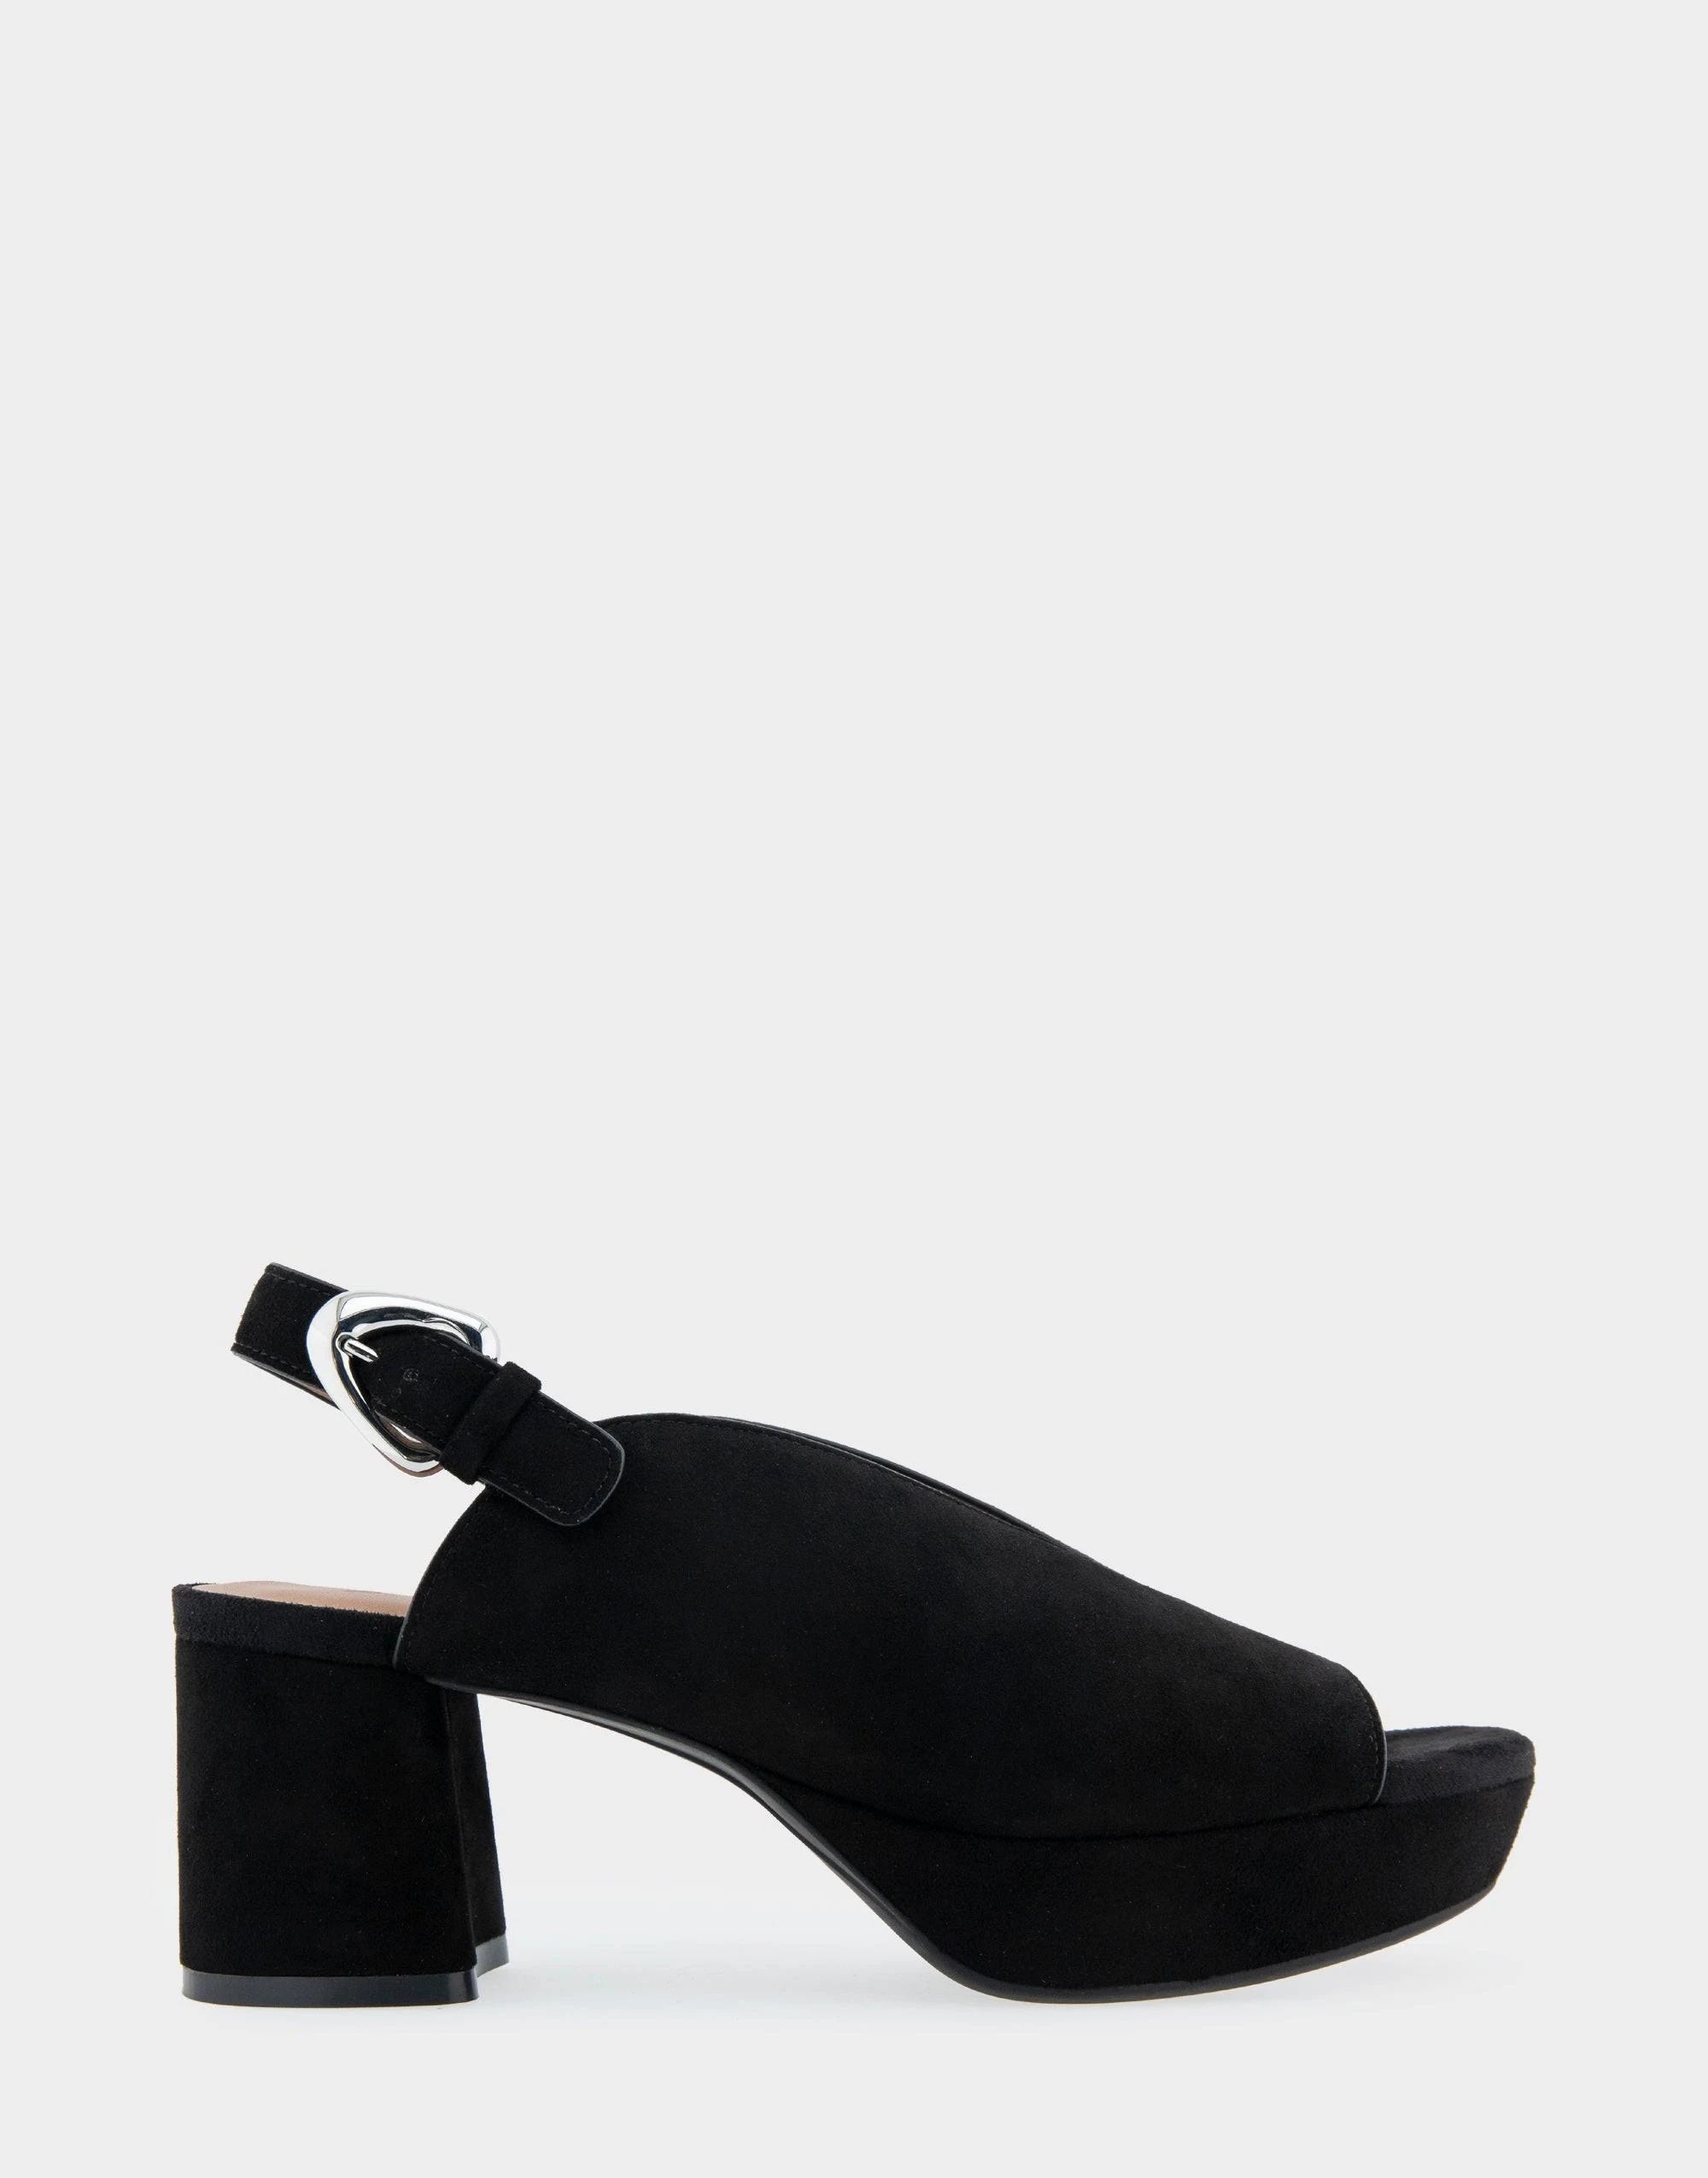 Elegant Black Suede Peep Toe Platform Heels | Image